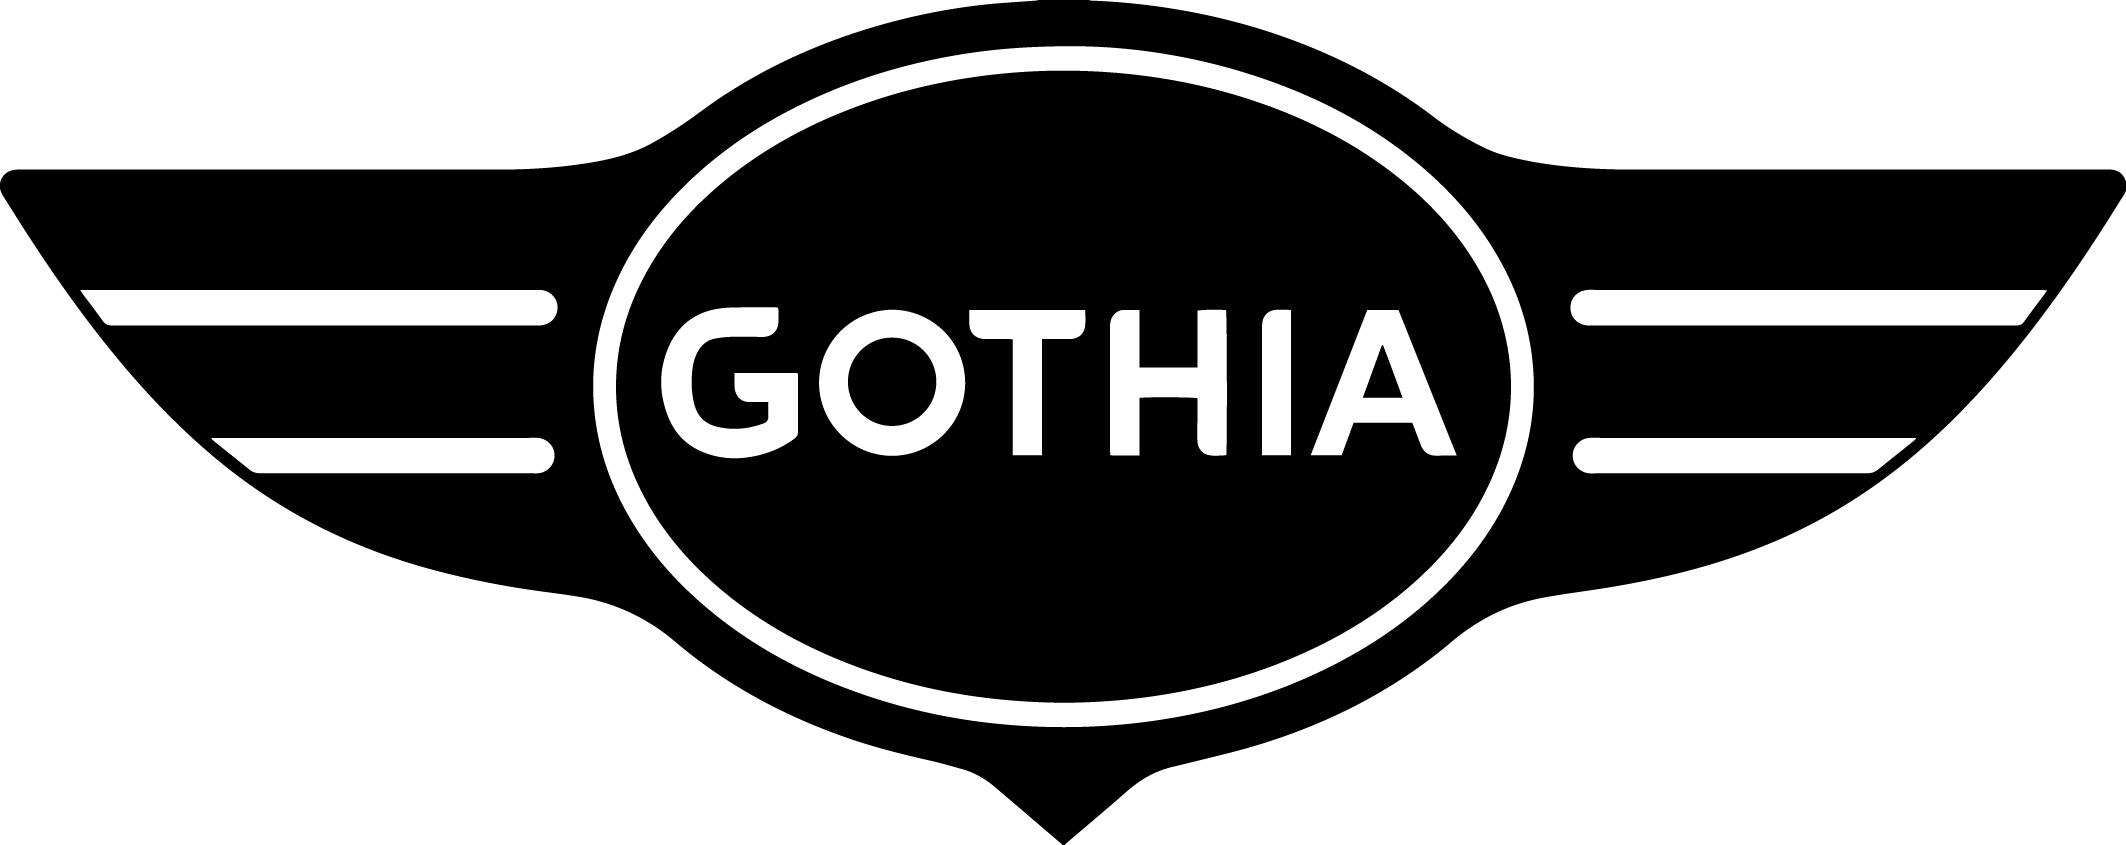 GOTHIA